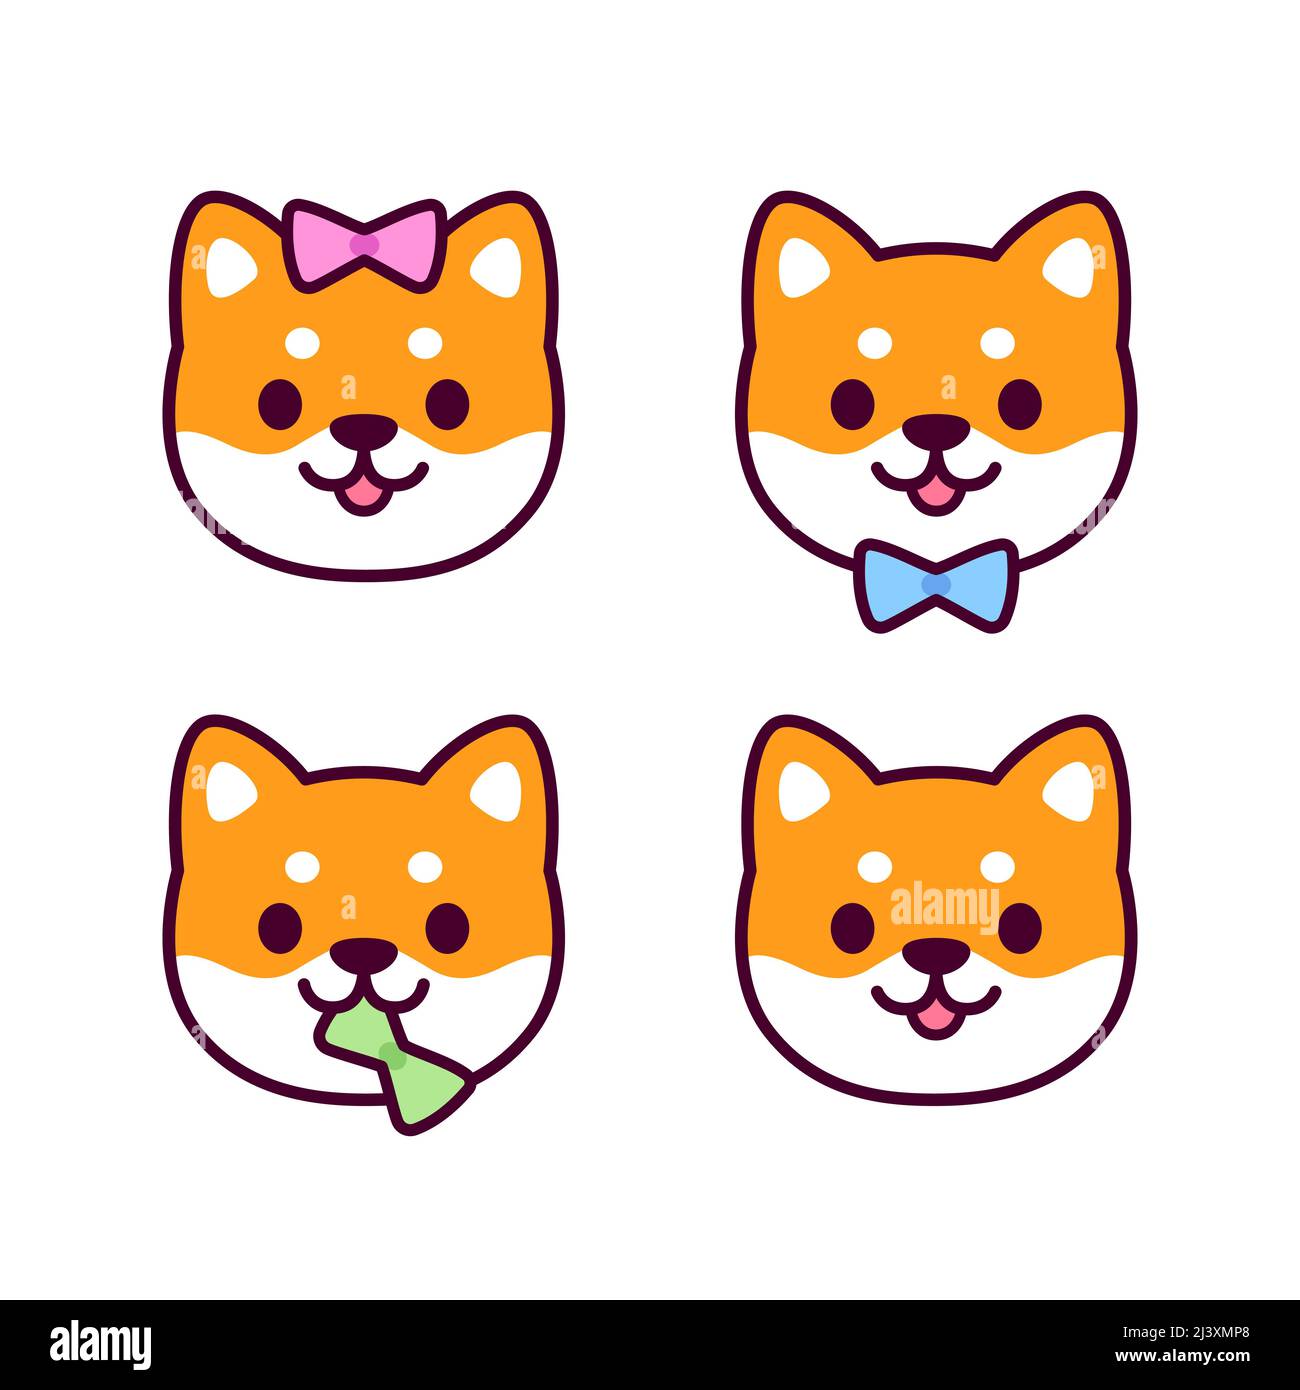 Carino fumetto Shiba Inu cucciolo icone di identità di genere con arco a colori. Ragazzo, ragazza e sesso neutrale (non binario). Set di illustrazioni vettoriali per cani Kawaii. Illustrazione Vettoriale